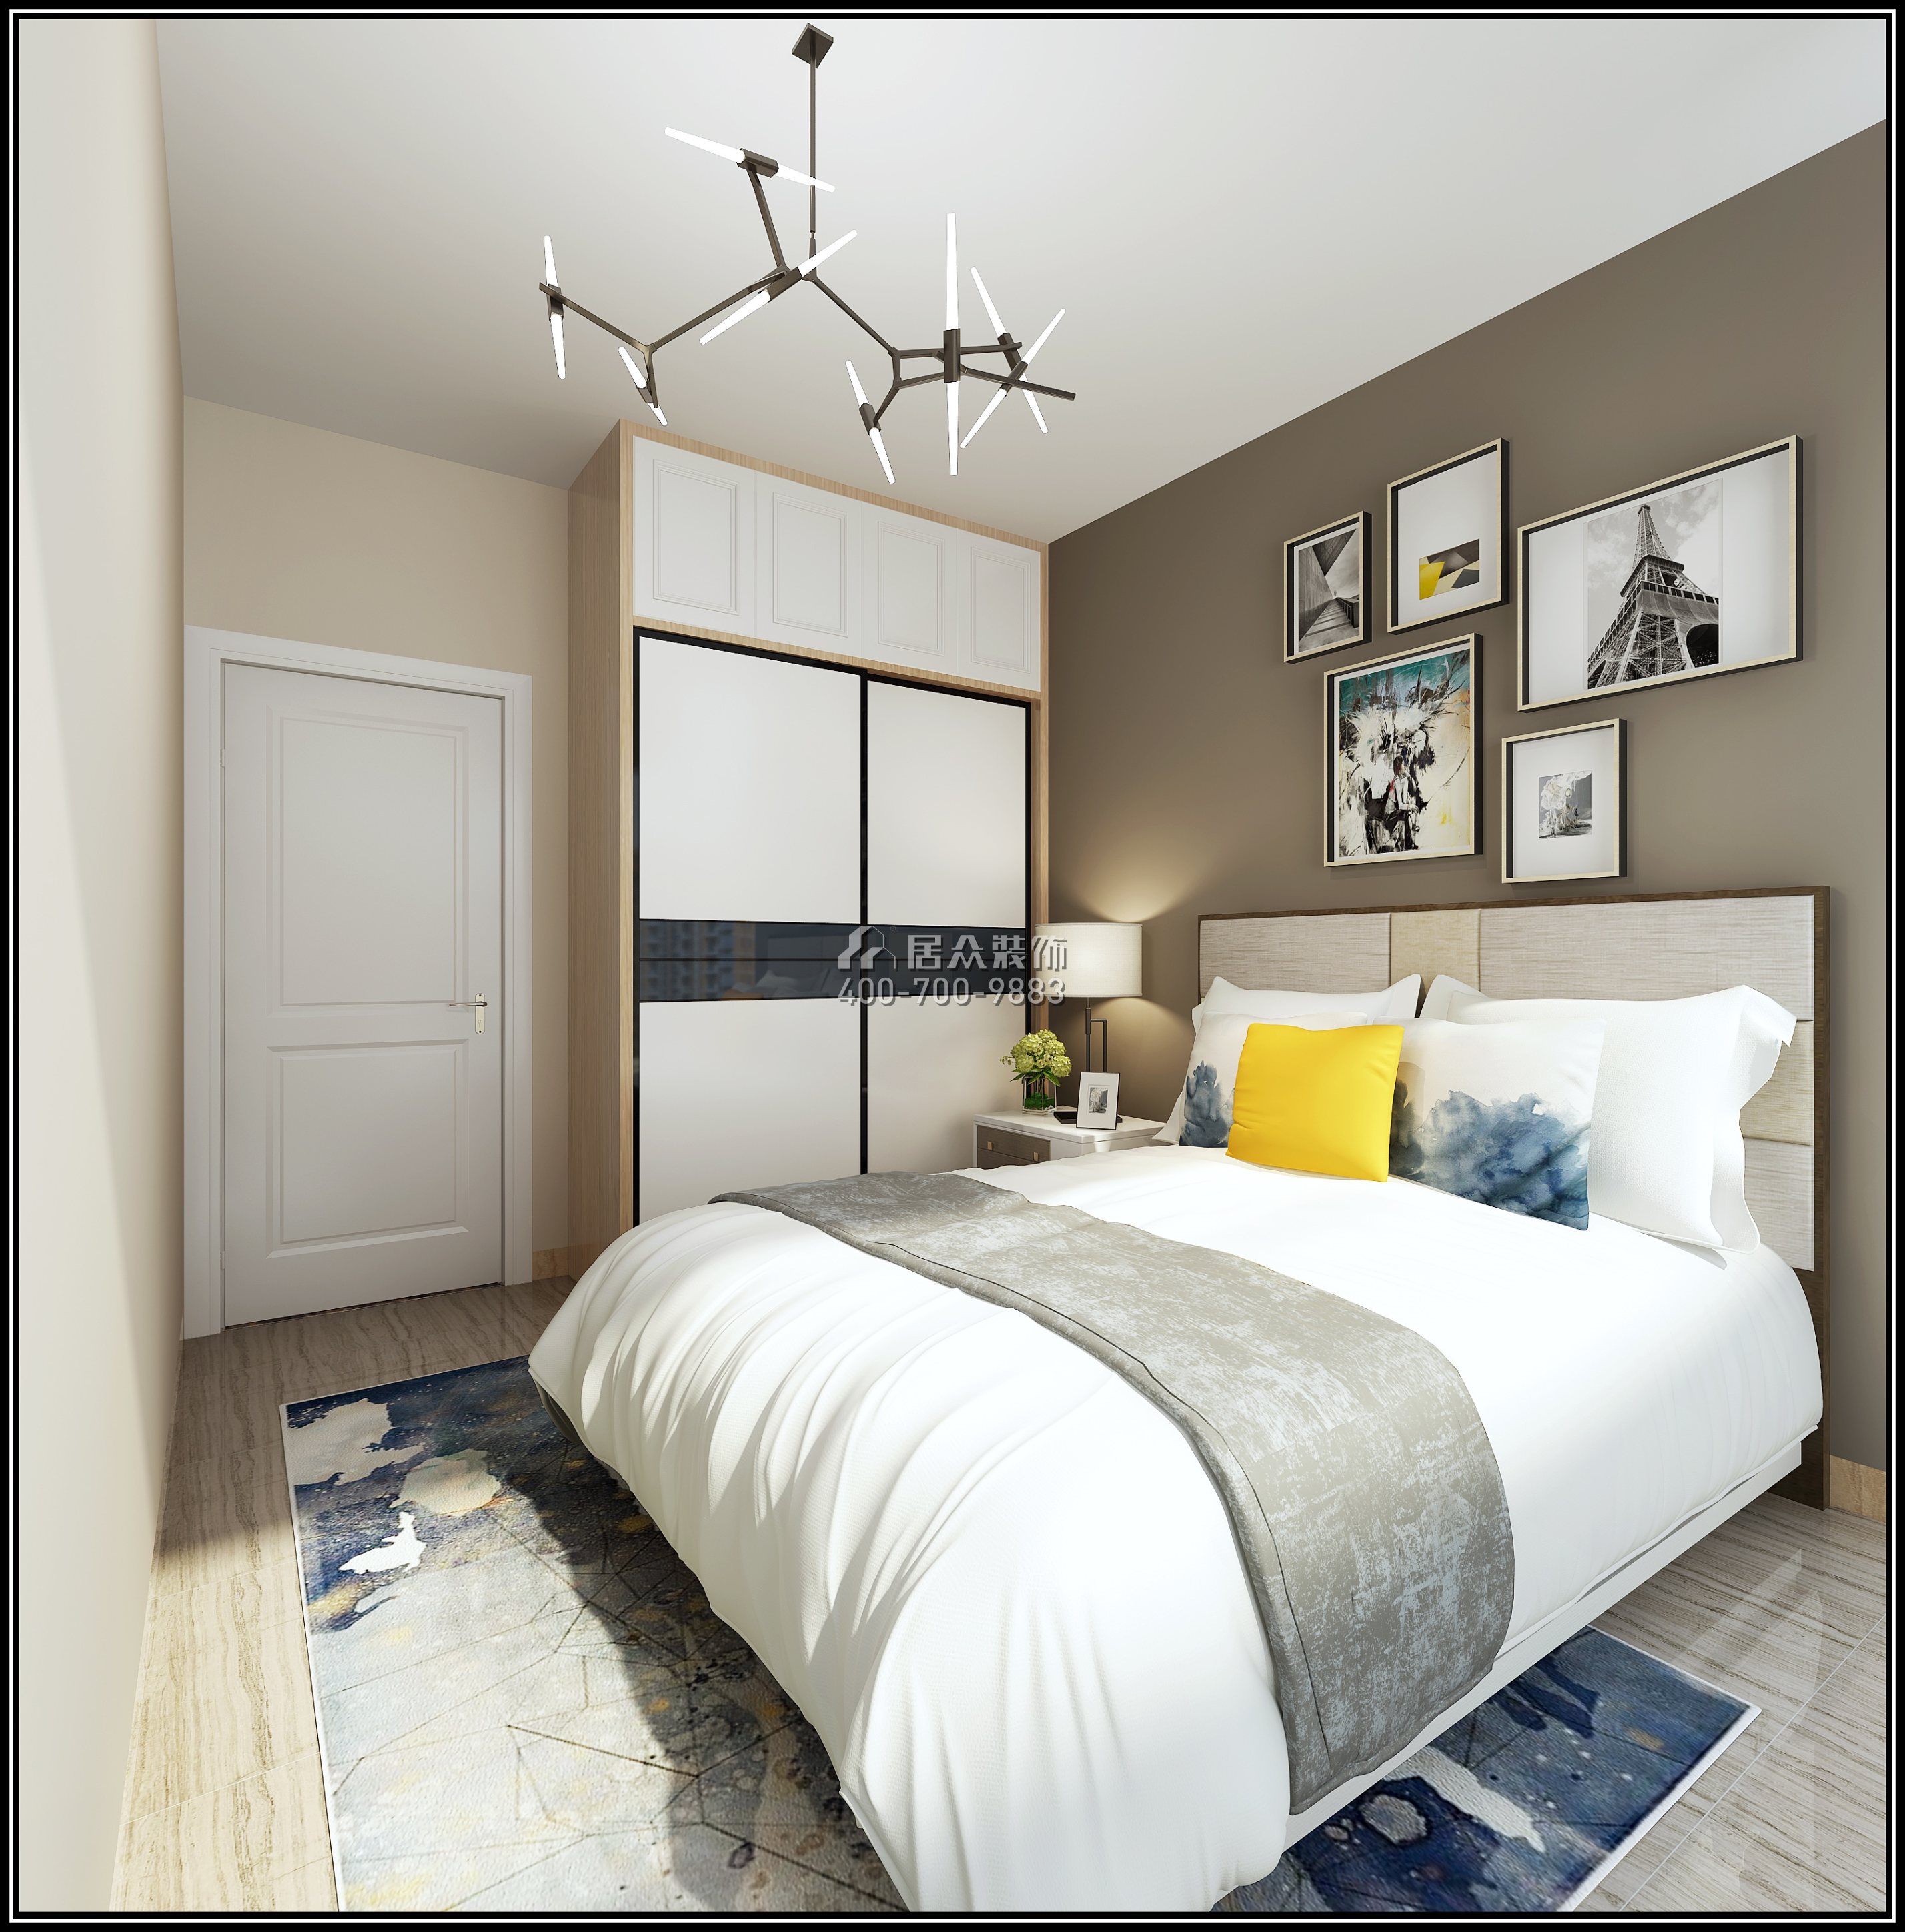 佳华领汇广场一期77平方米北欧风格平层户型卧室装修效果图